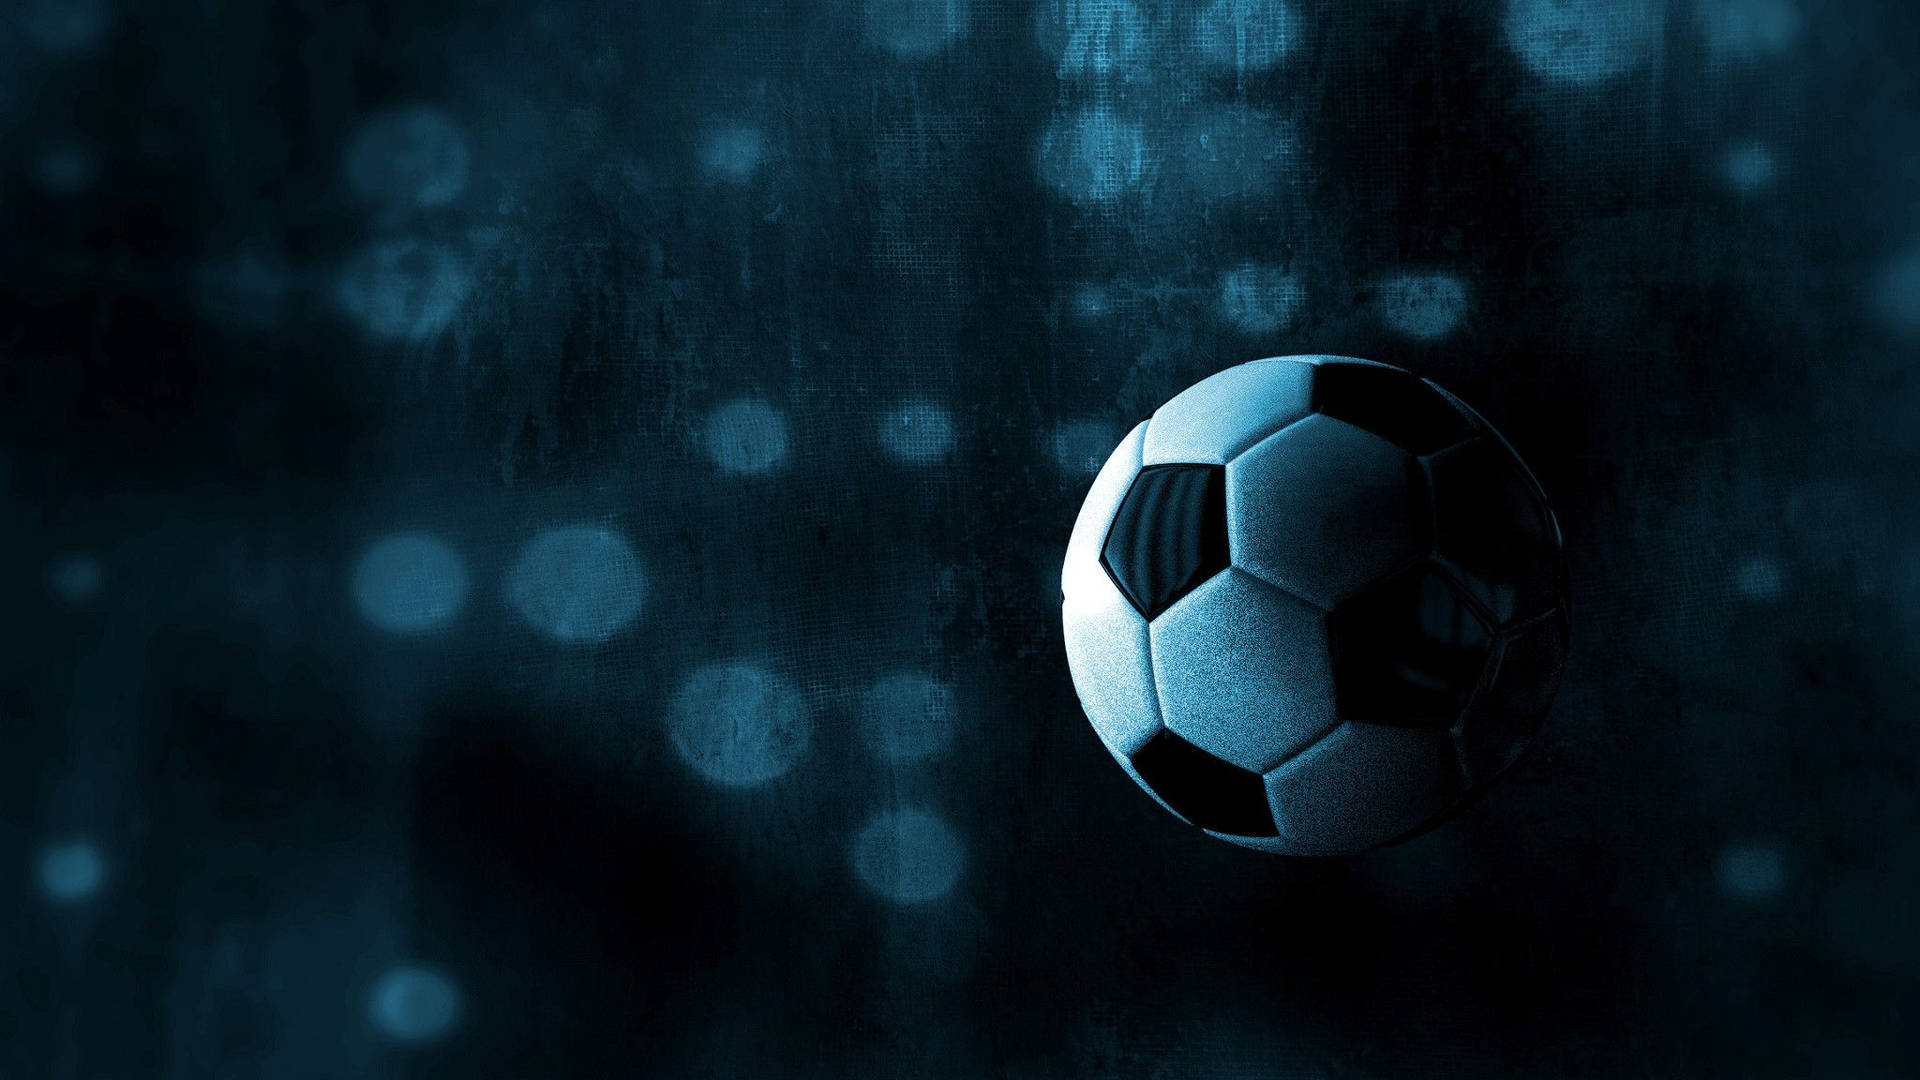 Dark Soccer Background Background